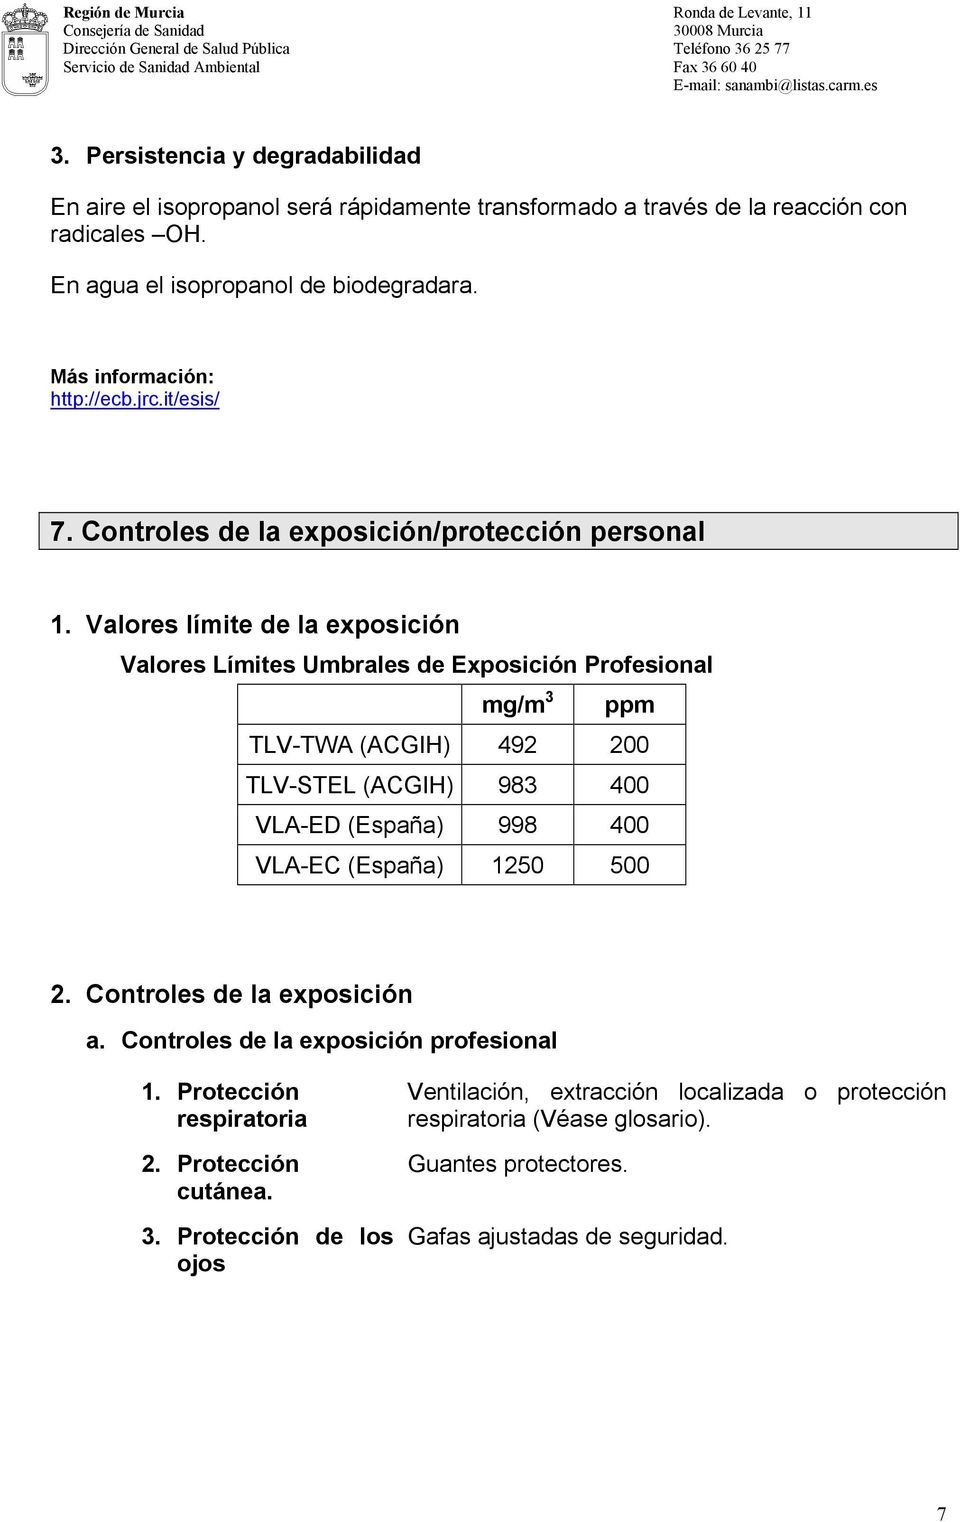 Valores límite de la exposición Valores Límites Umbrales de Exposición Profesional mg/m 3 ppm TLV-TWA (ACGIH) 492 200 TLV-STEL (ACGIH) 983 400 VLA-ED (España) 998 400 VLA-EC